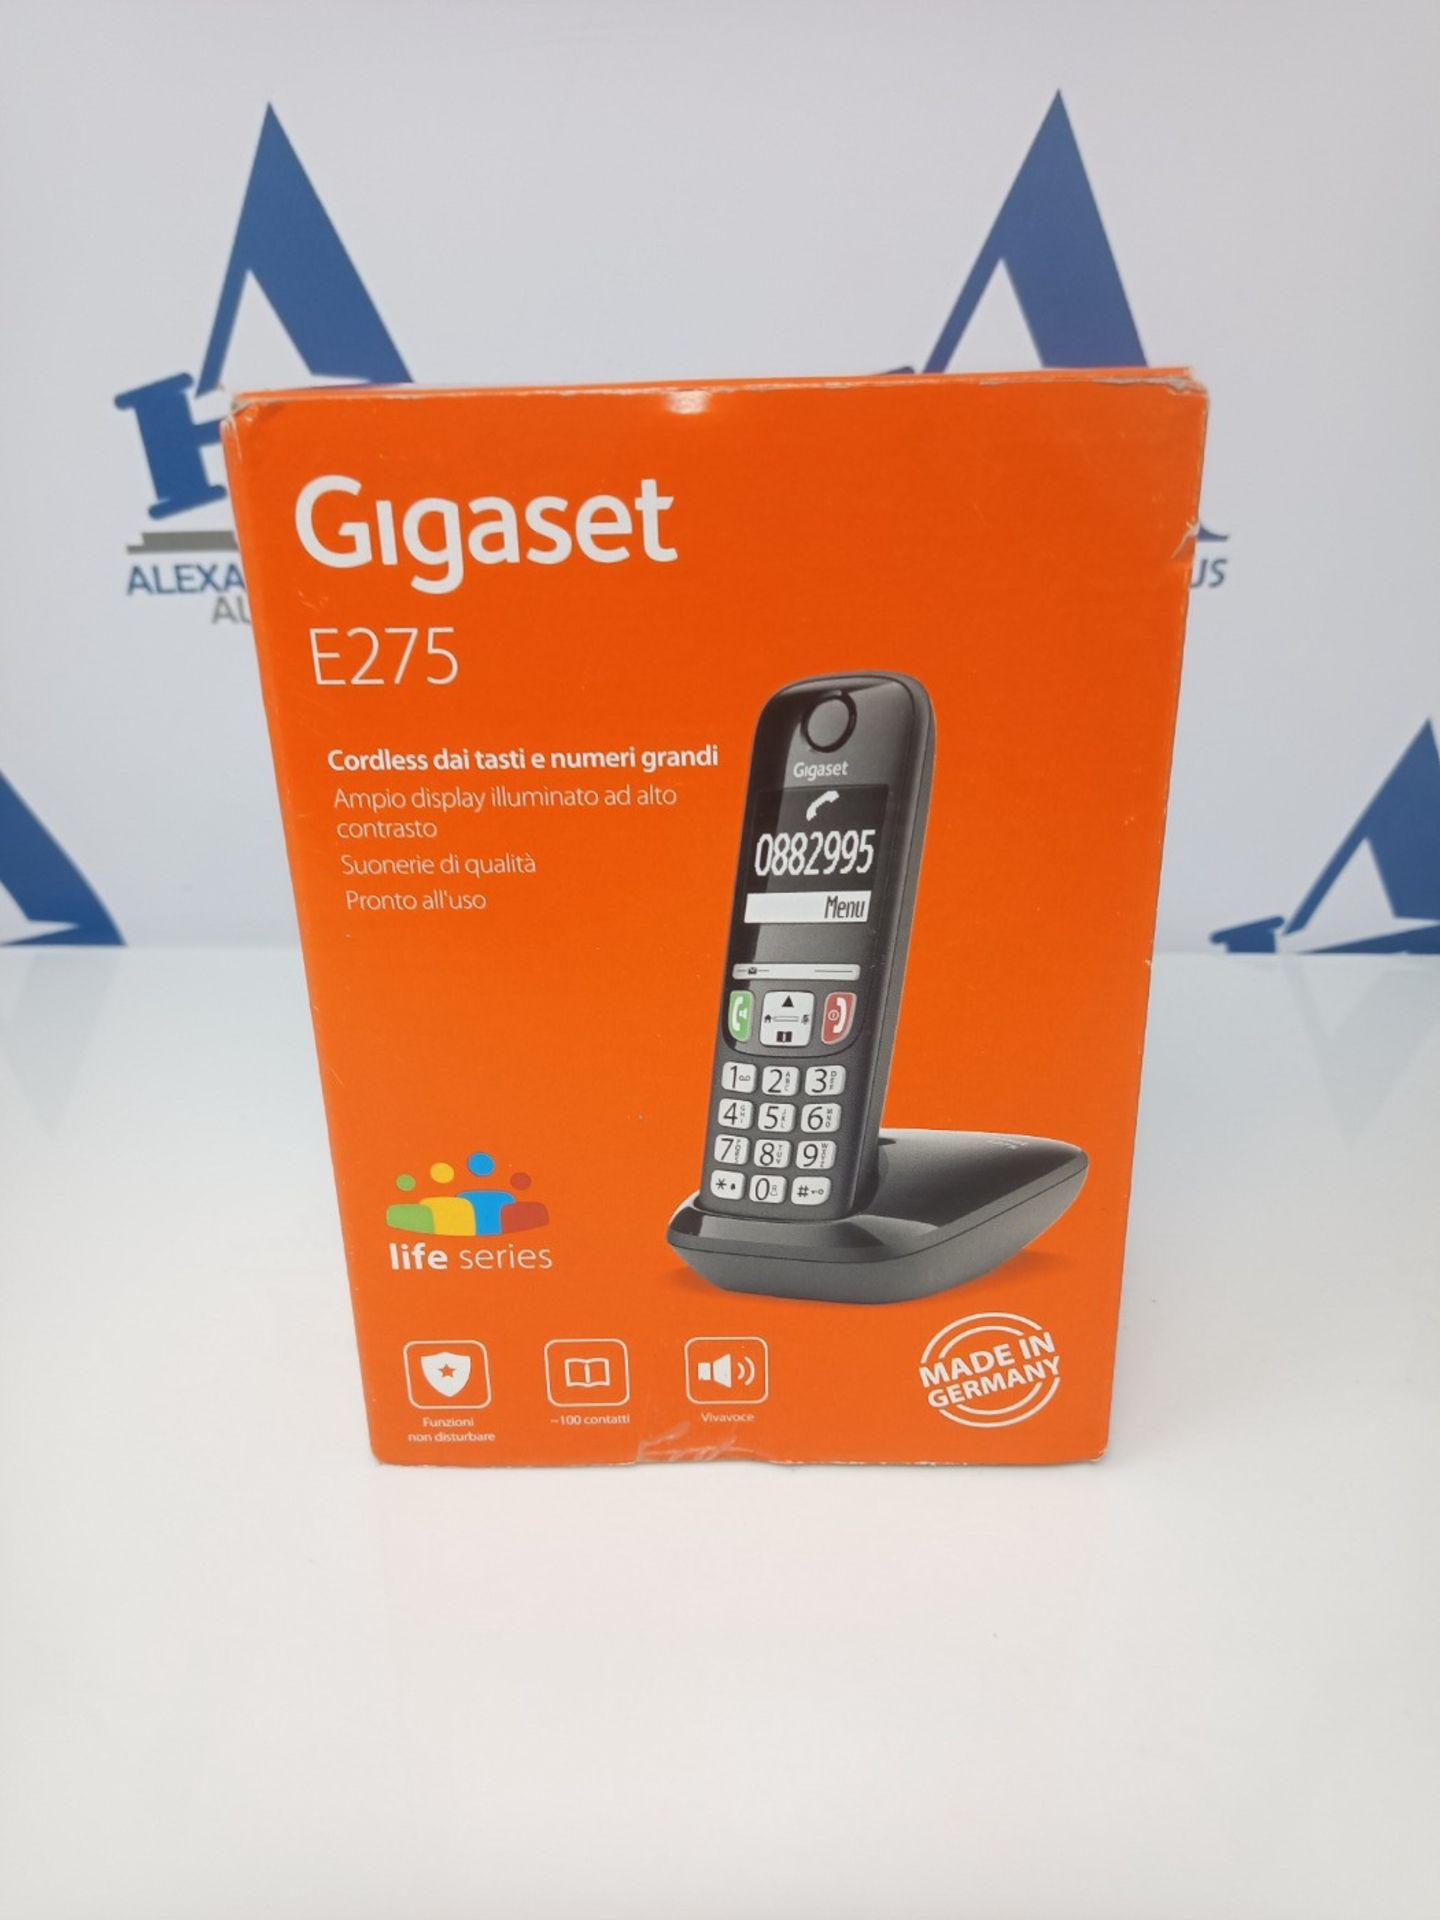 Gigaset E275 Il nuovo telefono cordless dai tasti grandi, numeri grandi e suonerie for - Image 2 of 3